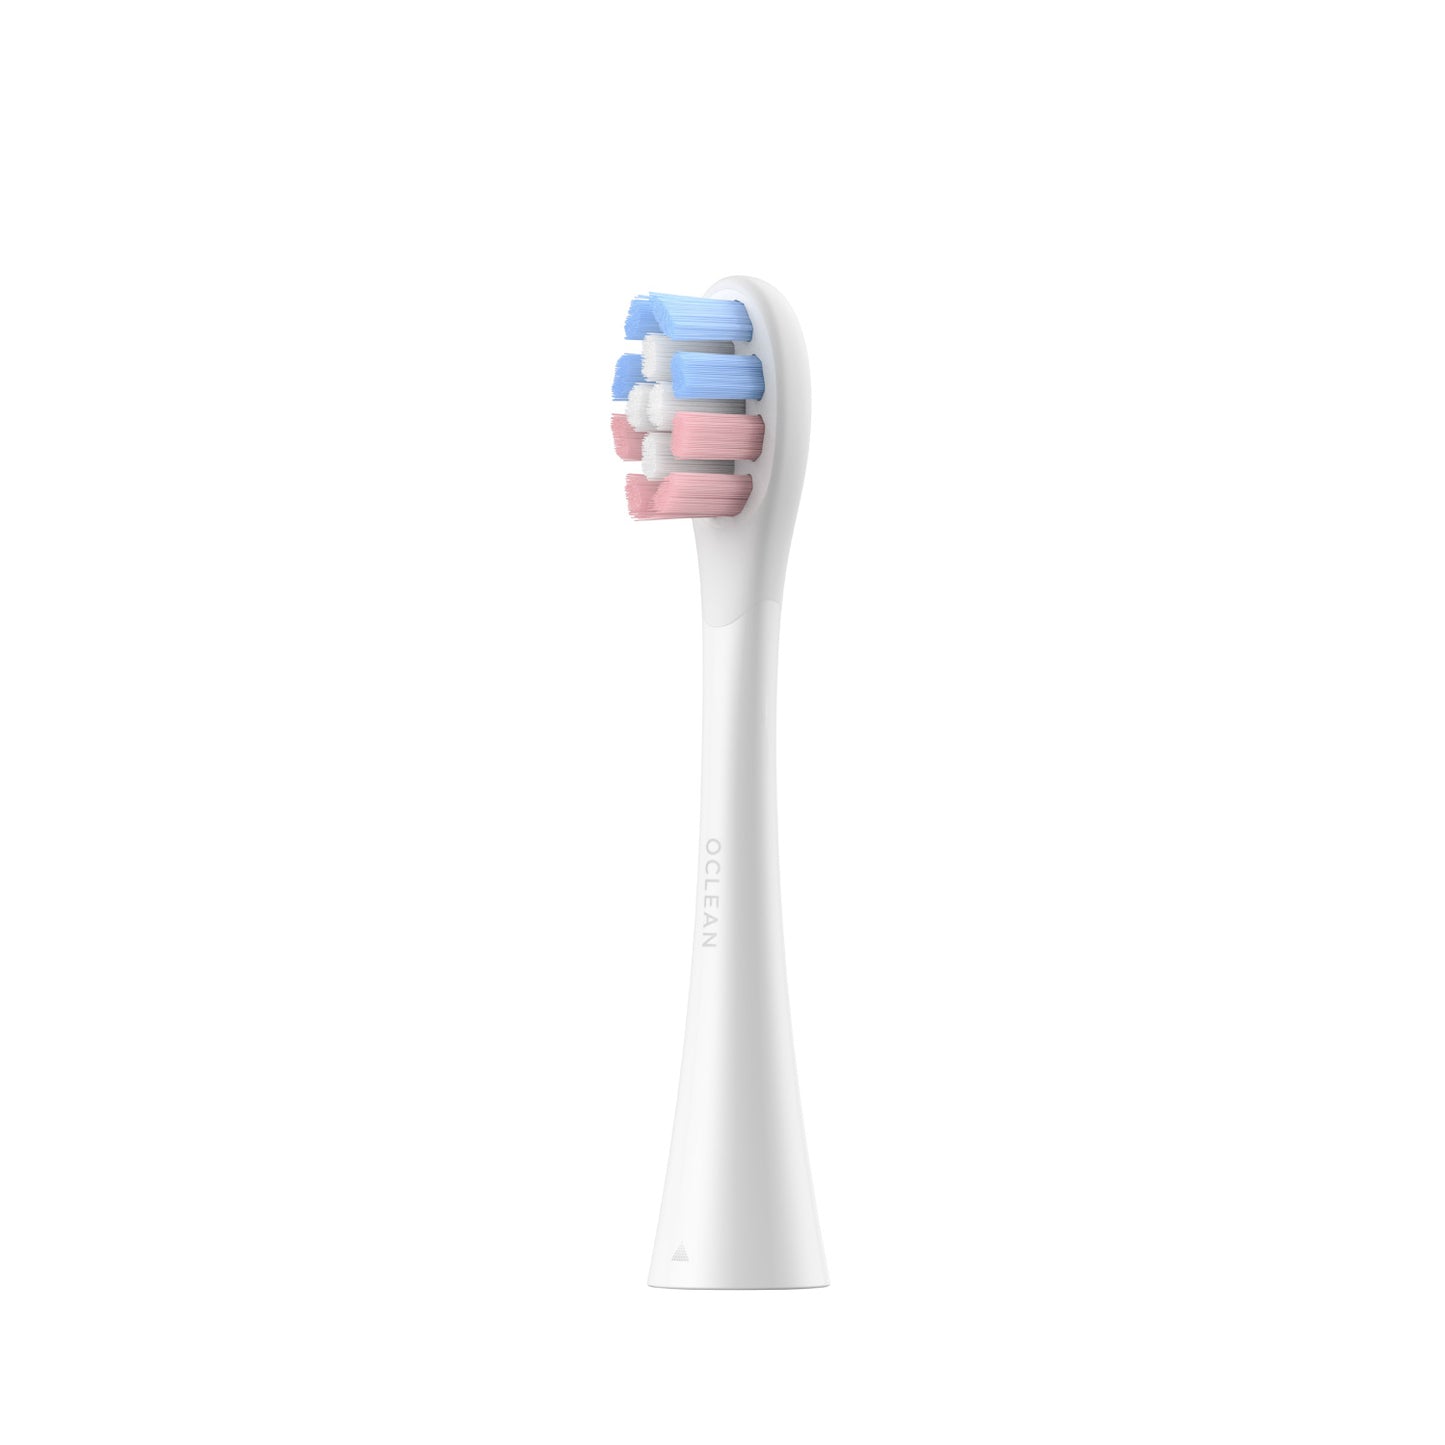 Oclean Brush Heads Refills Toothbrush Replacement Heads Kids P3K1 Oclean US Store